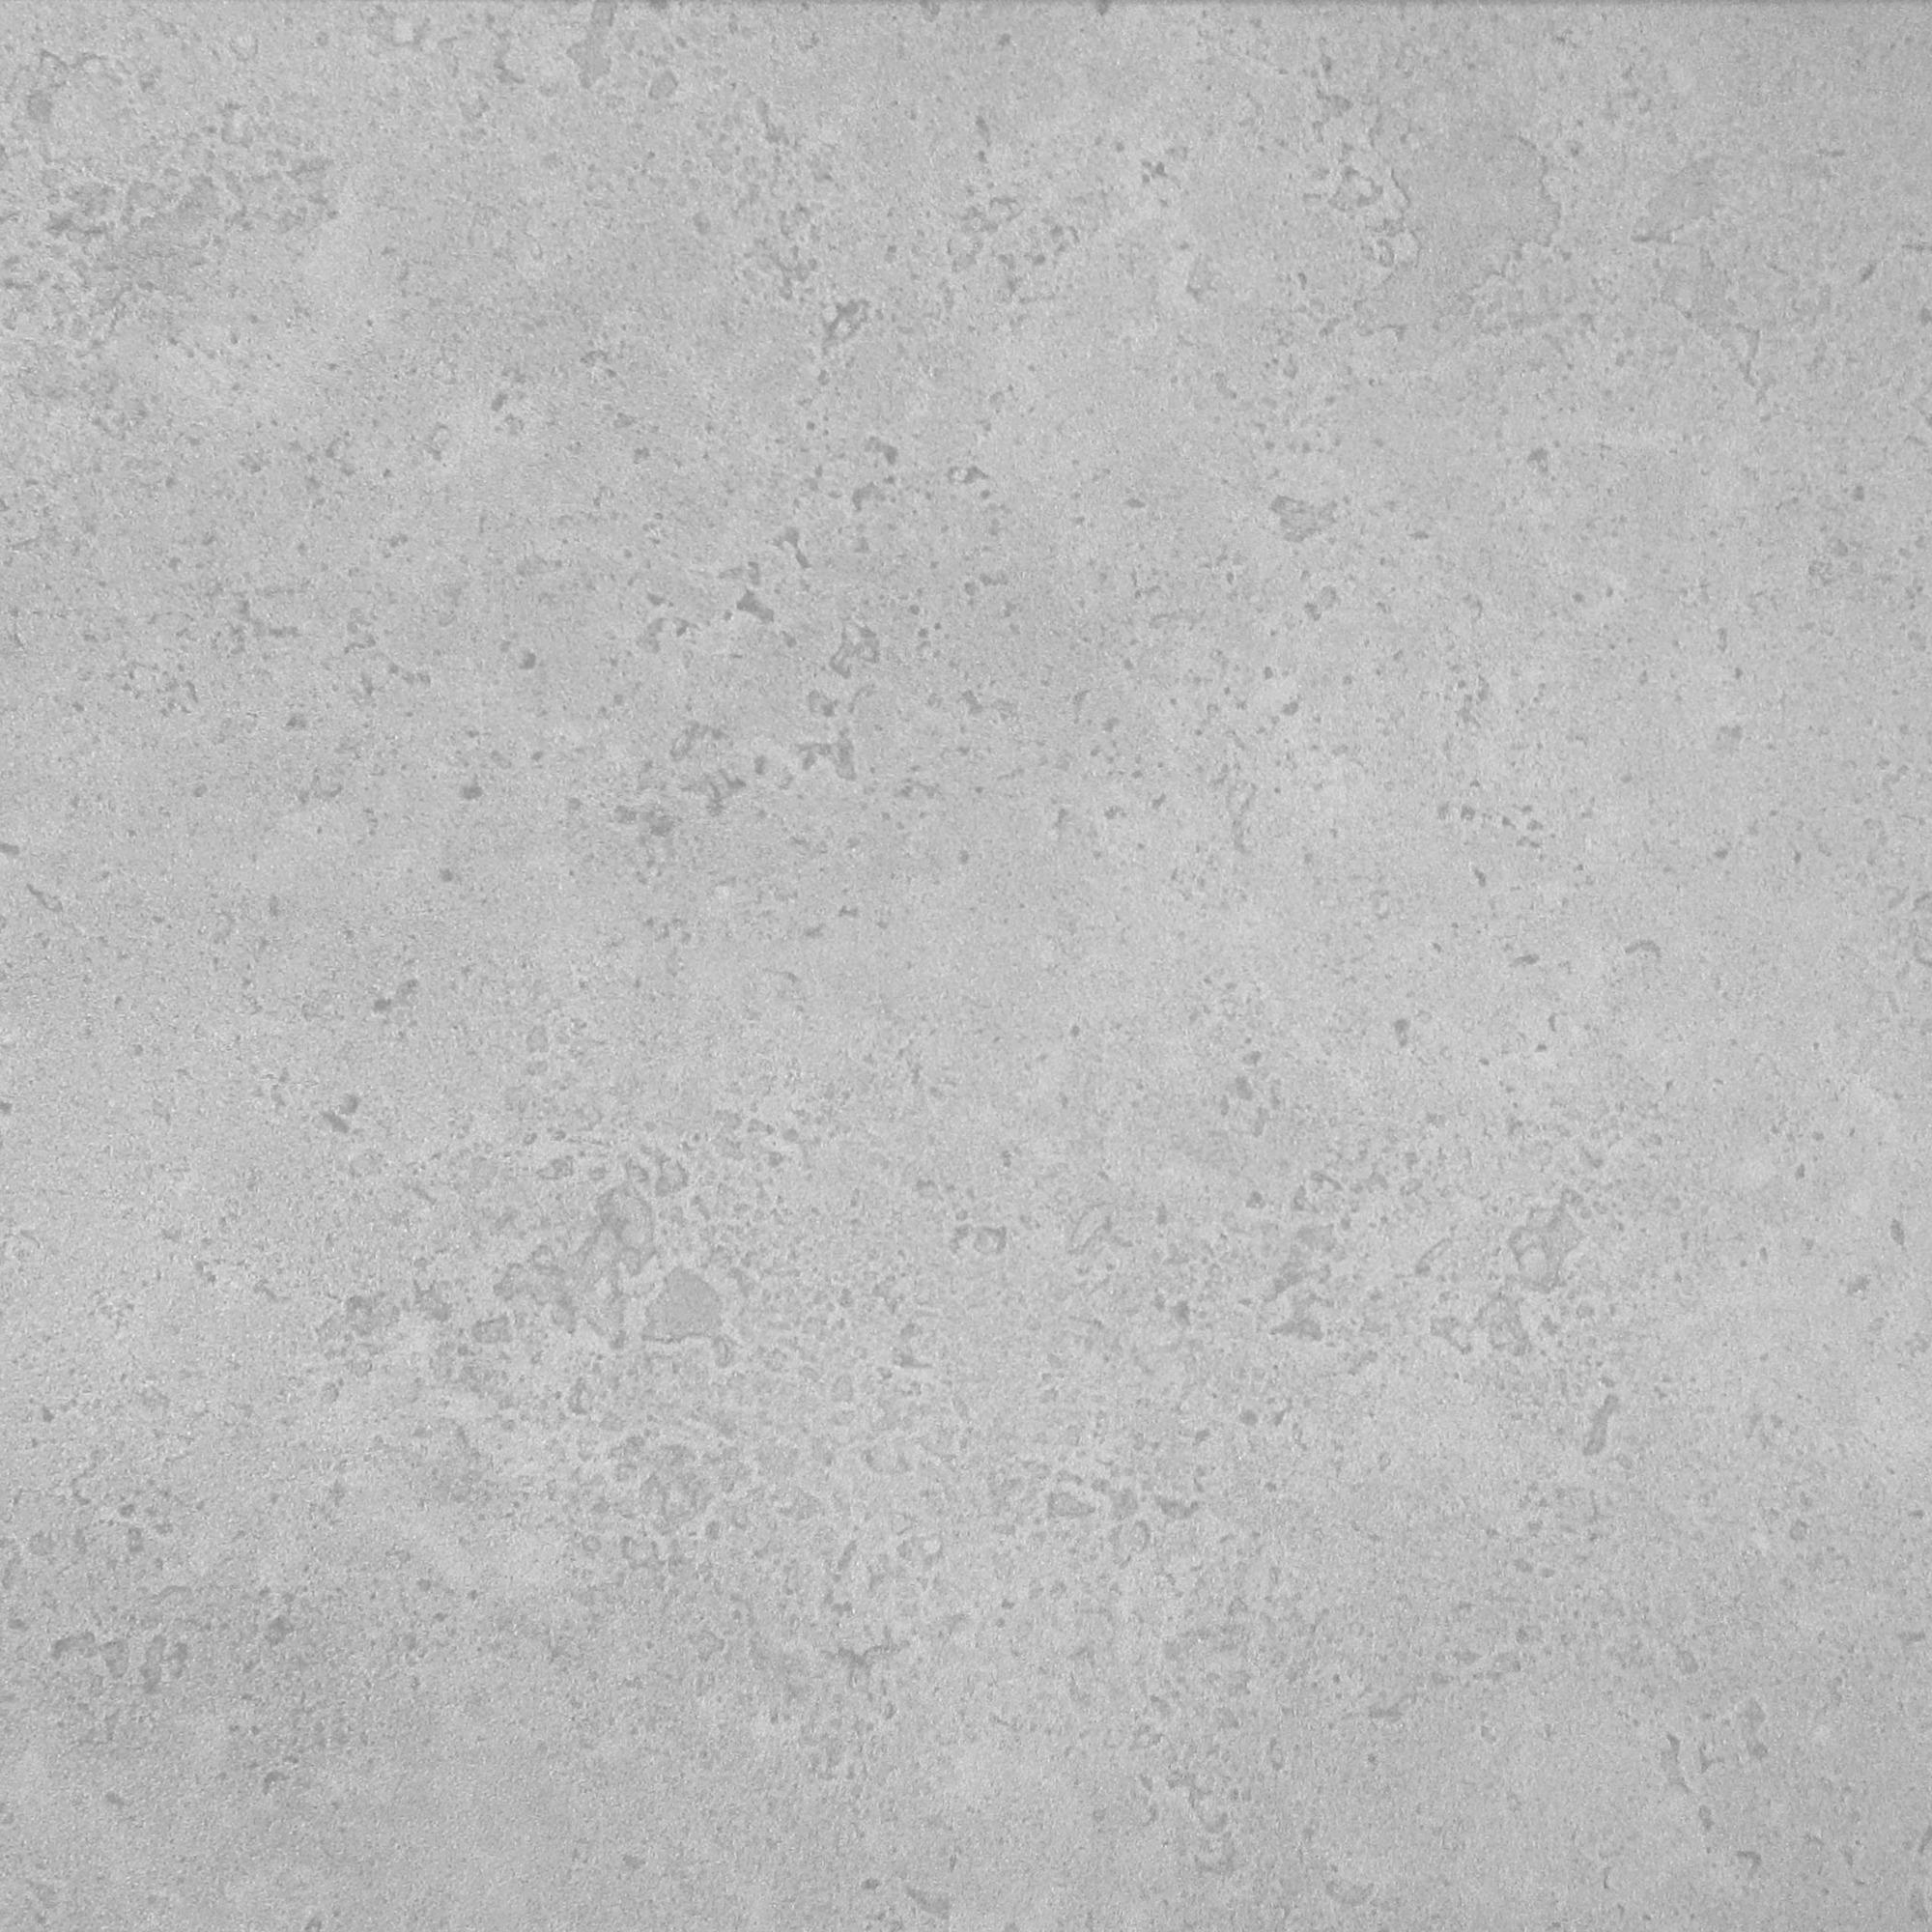 Wandpaneel Hellgrau Styropor B/l: Ca. 50x50 Cm Wandpaneel_betonoptik 2qm - hellgrau (50,00/50,00cm)